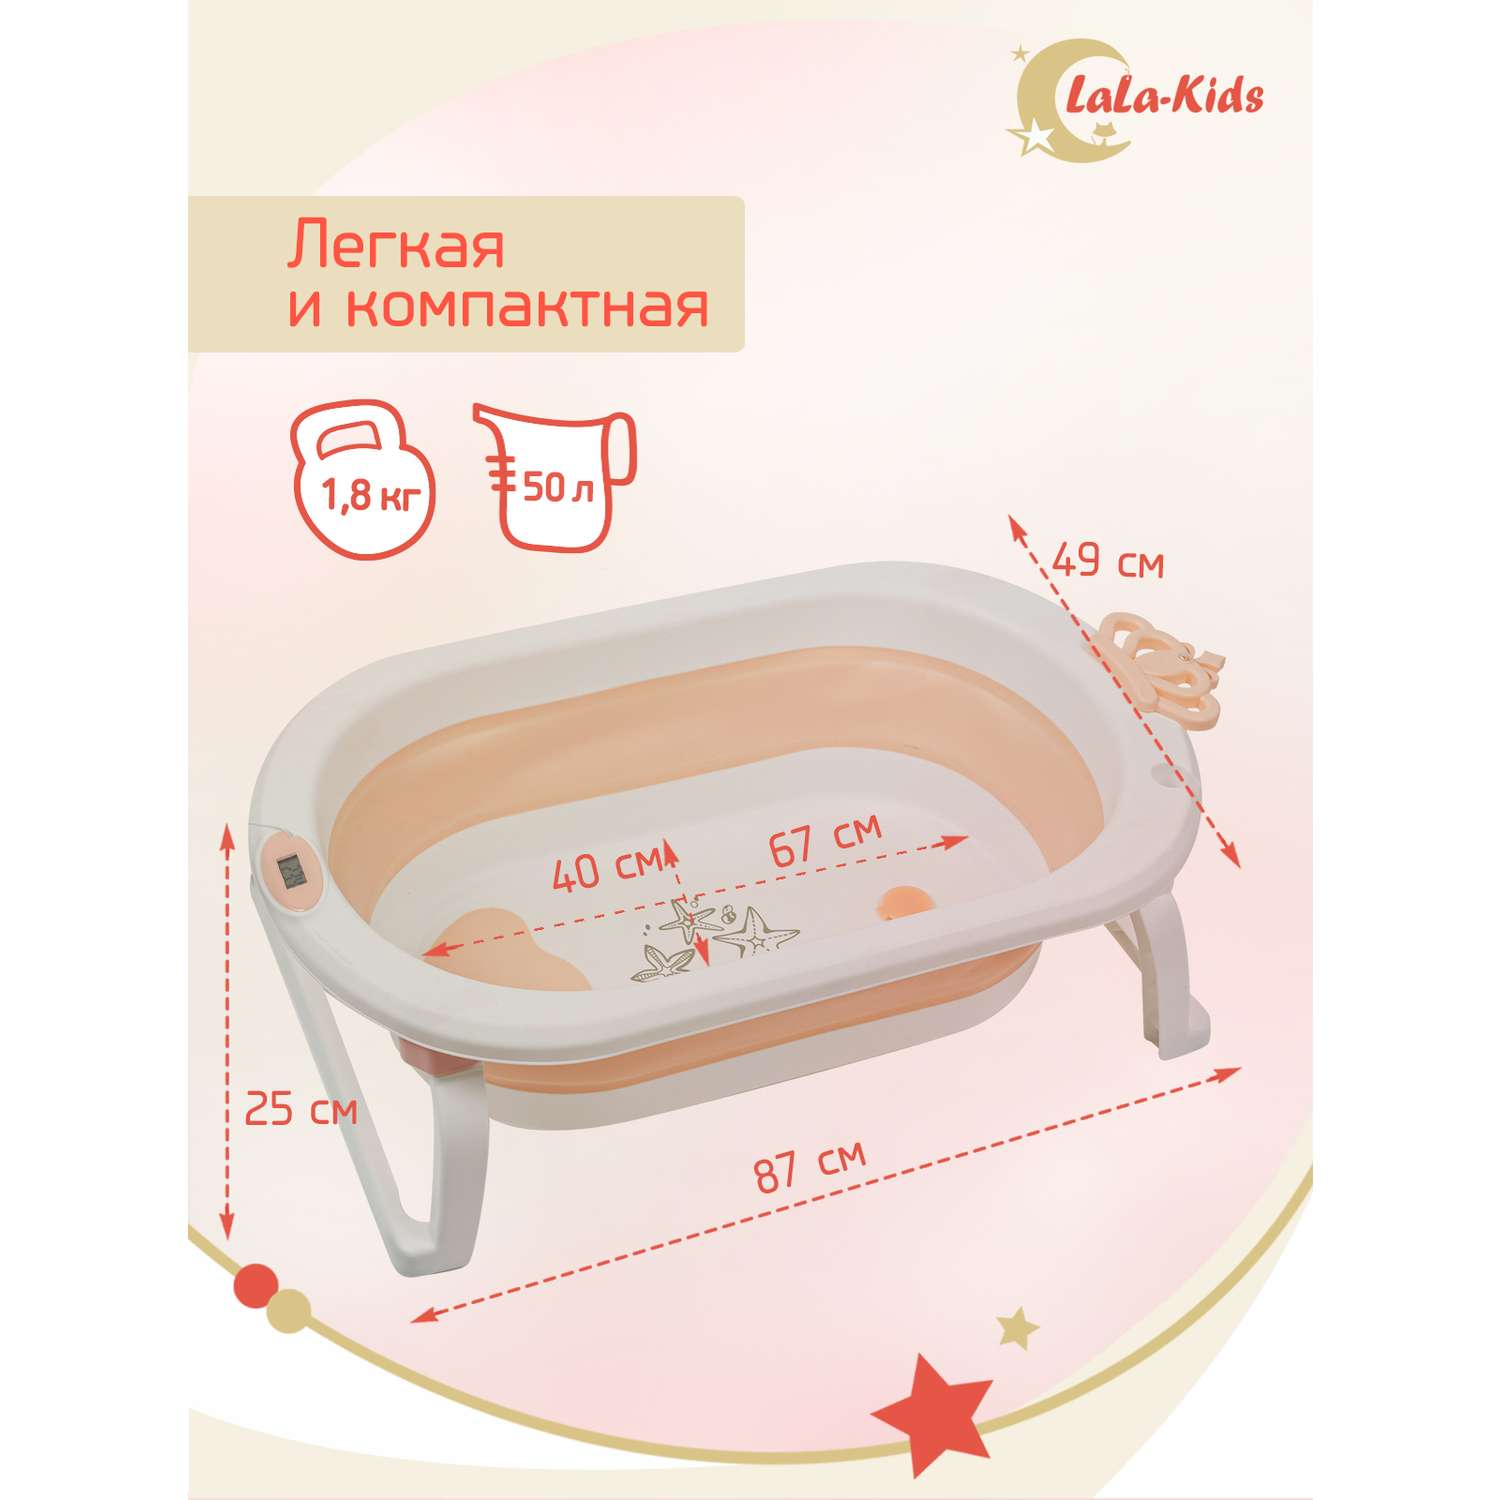 Детская ванночка с термометром LaLa-Kids складная для купания новорожденных с термометром и матрасиком в комплекте - фото 8